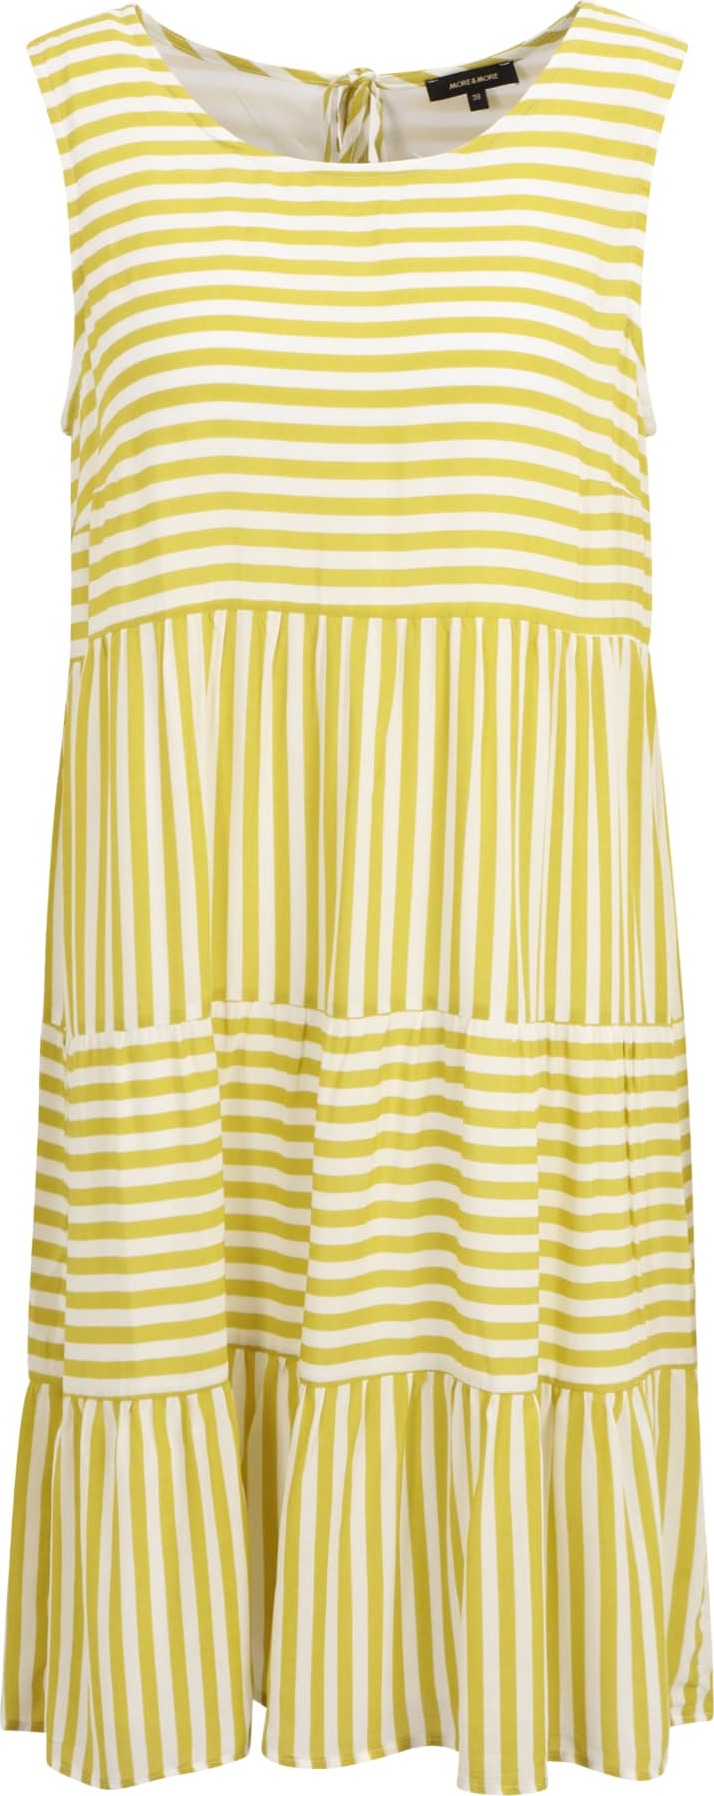 MORE & MORE Letní šaty žlutá / bílá